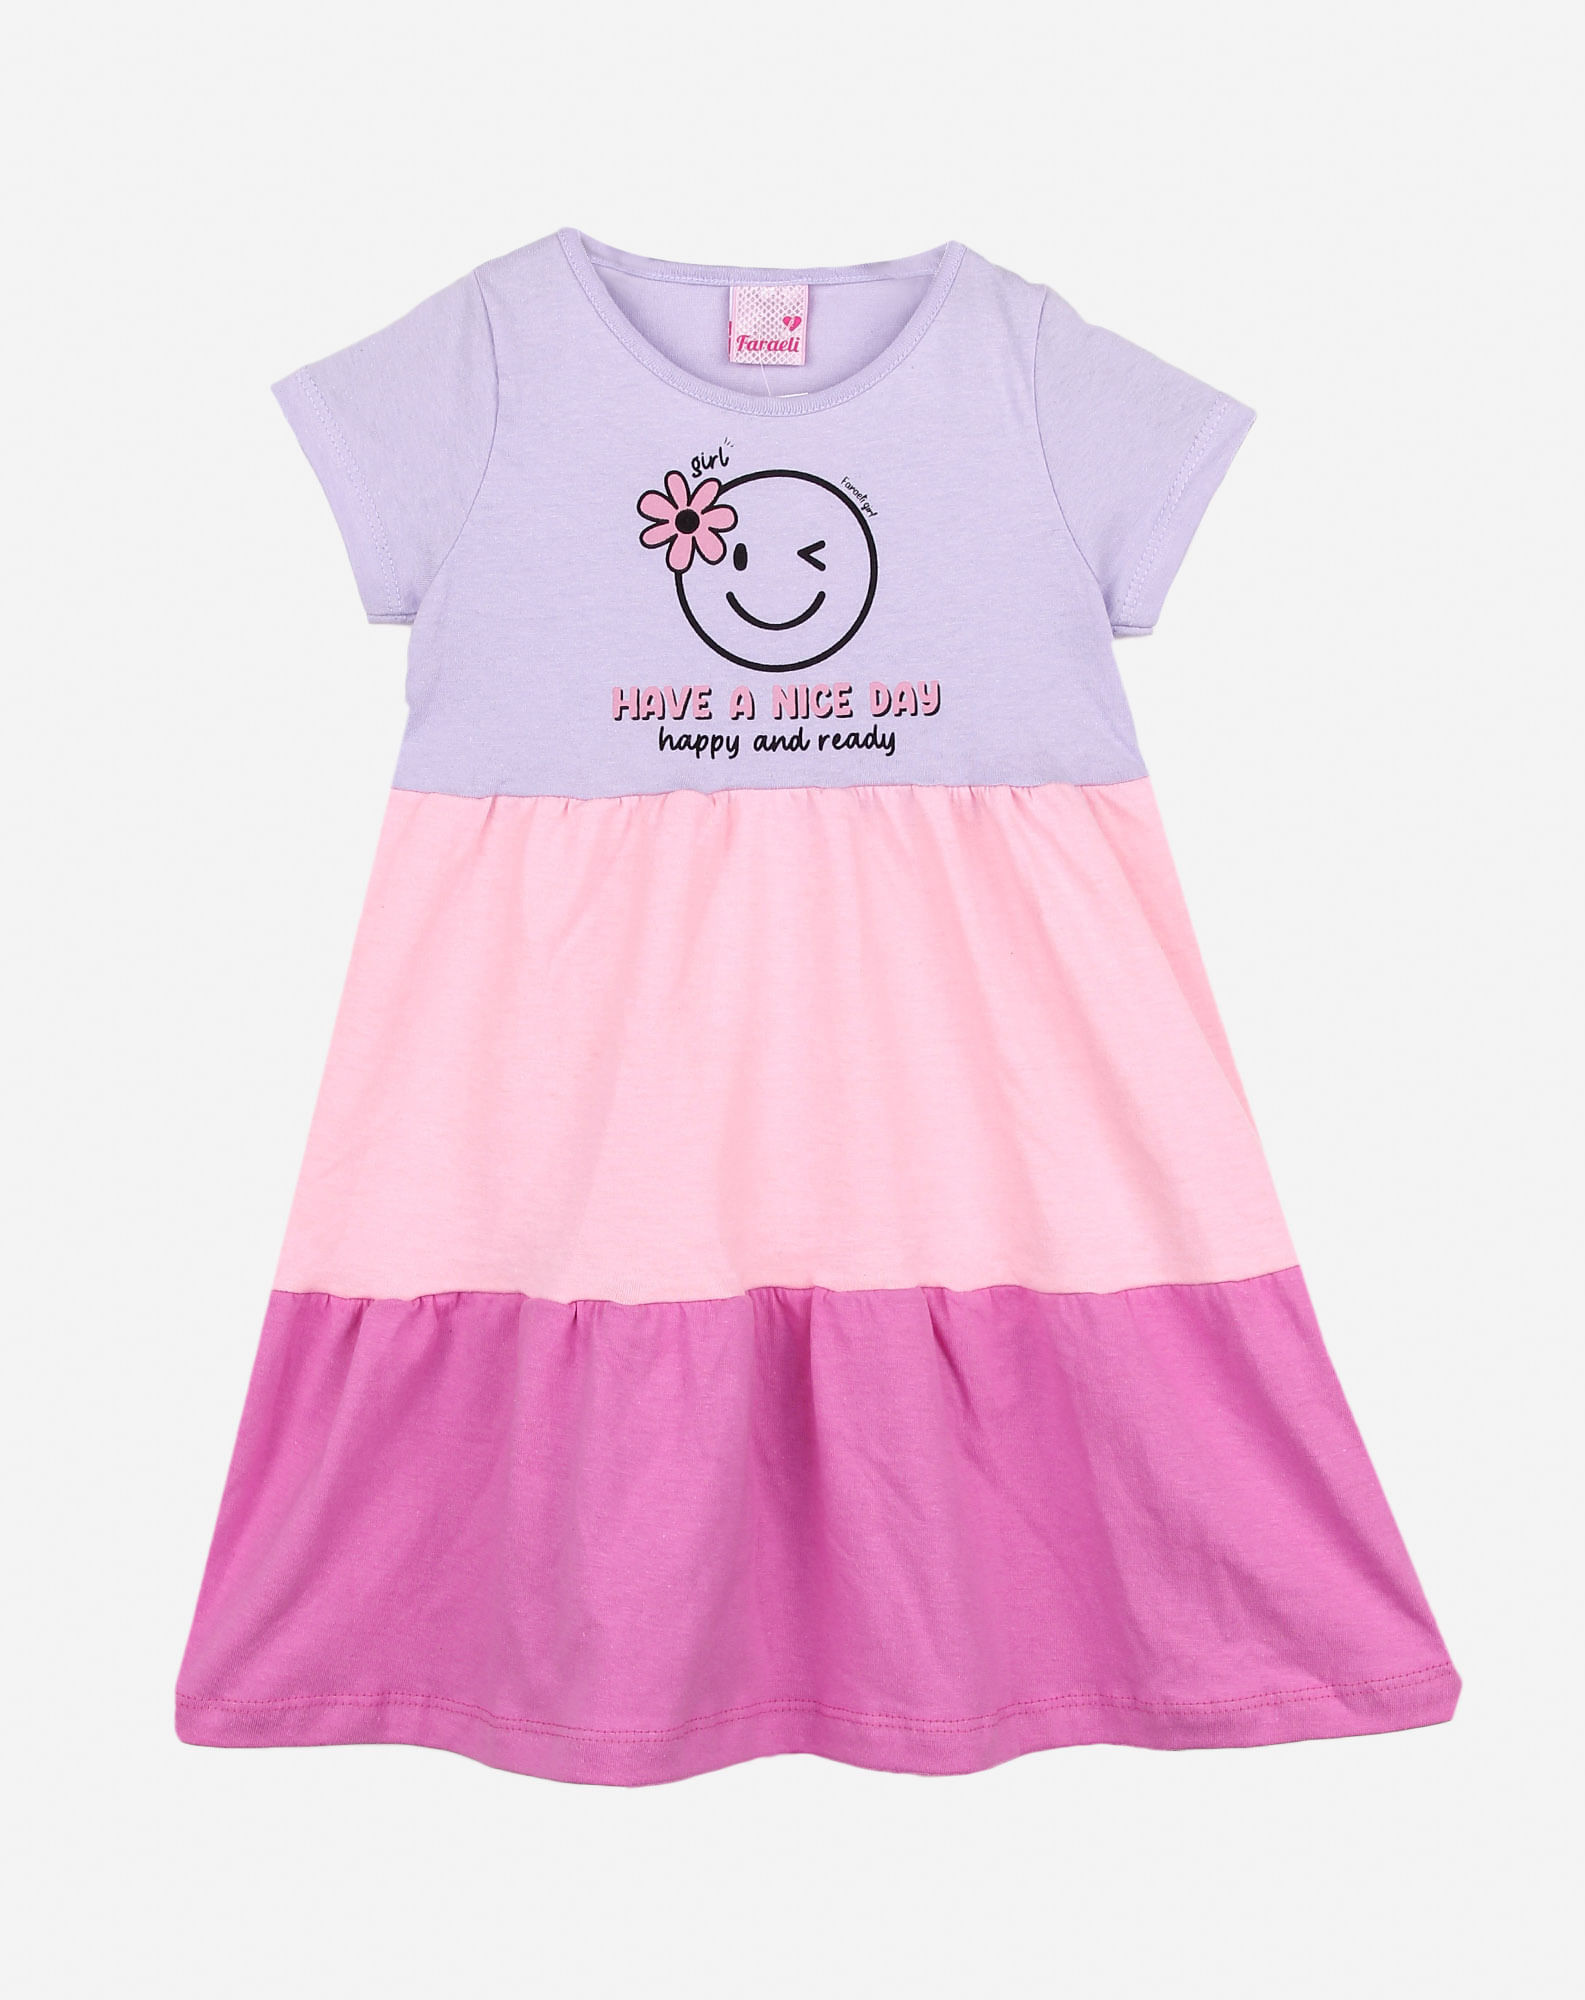 672726001 vestido manga longa infantil estampa emoji lilas 1 bb0